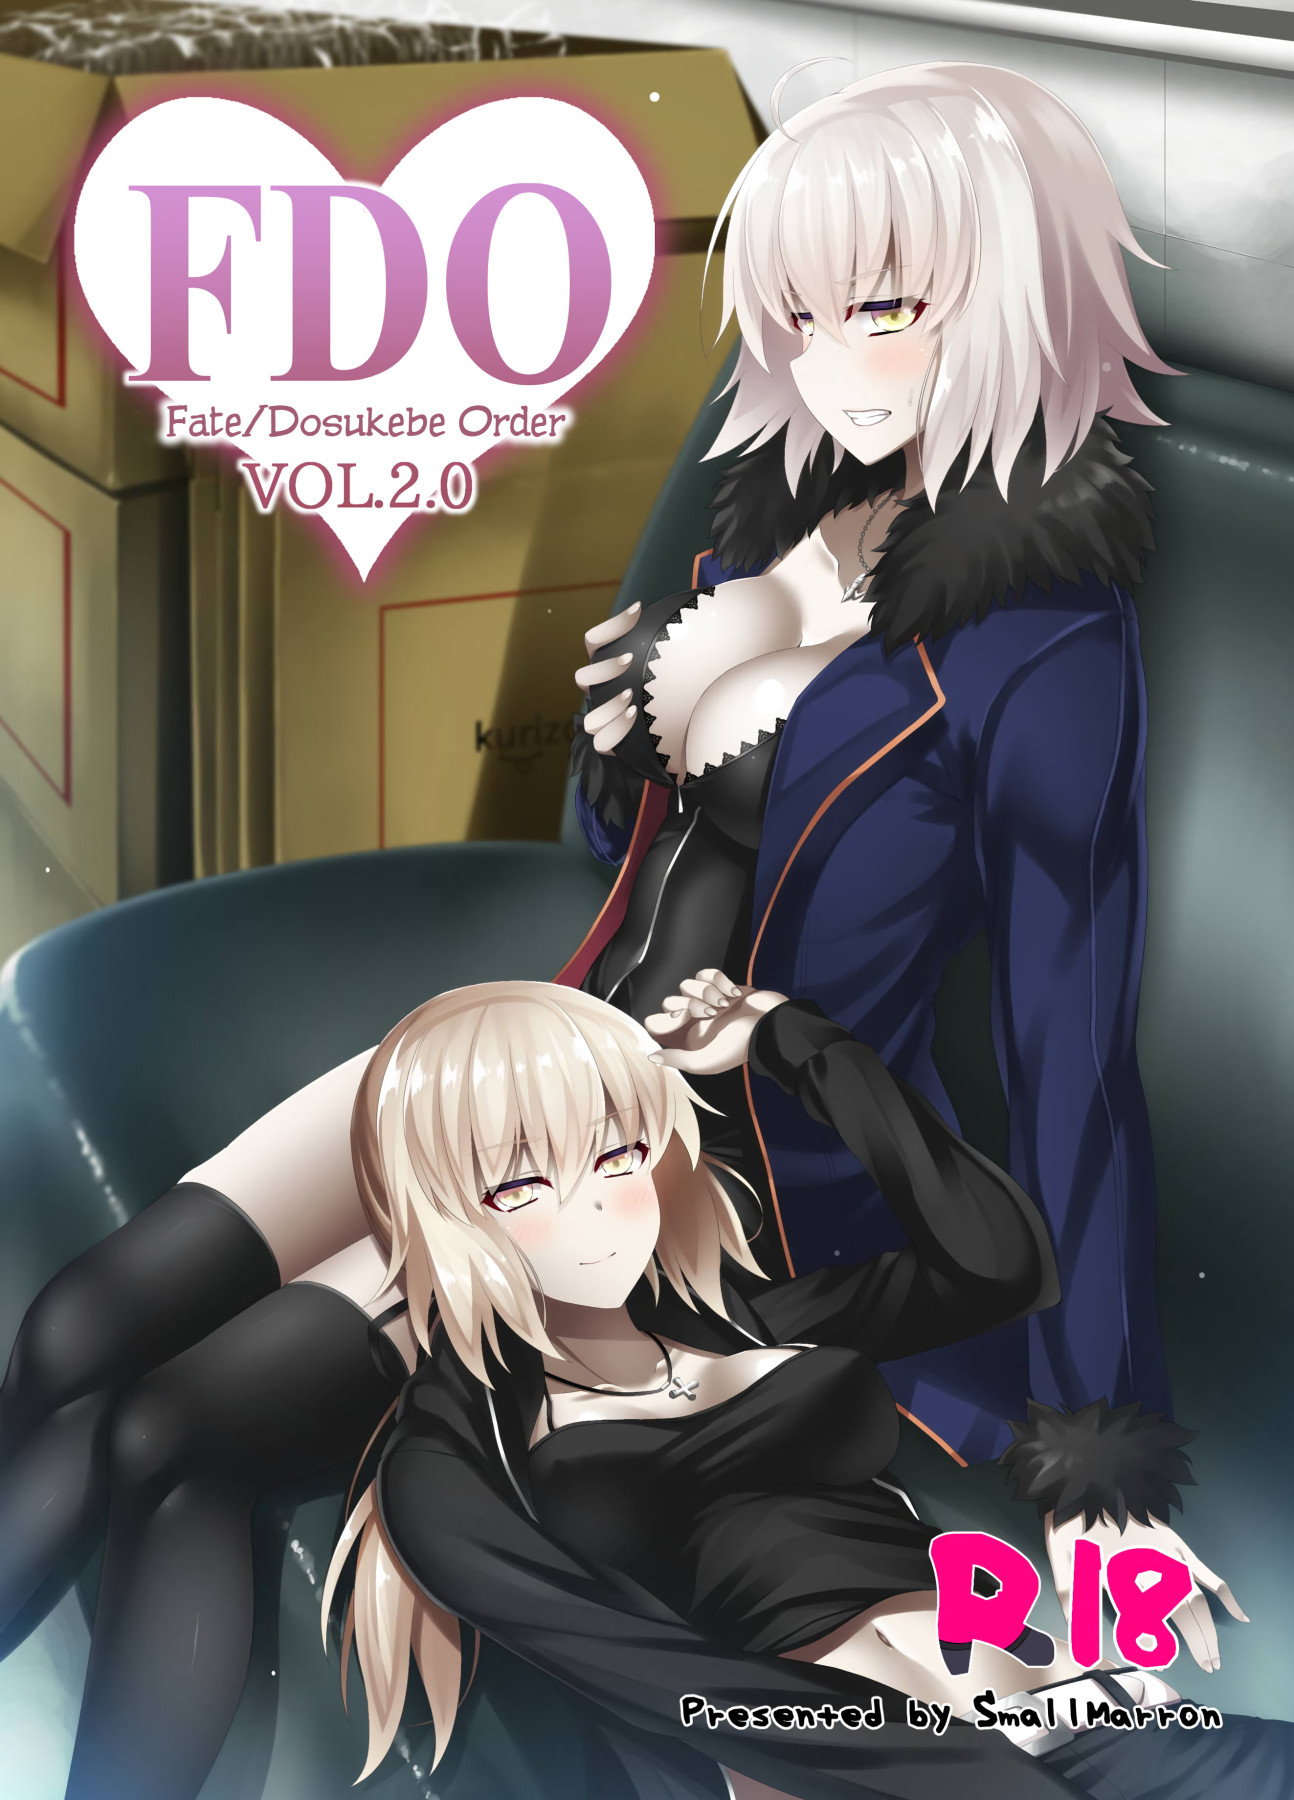 Hentai Manga Comic-FDO Fate/Dosukebe Order VOL. 2.0-Read-1